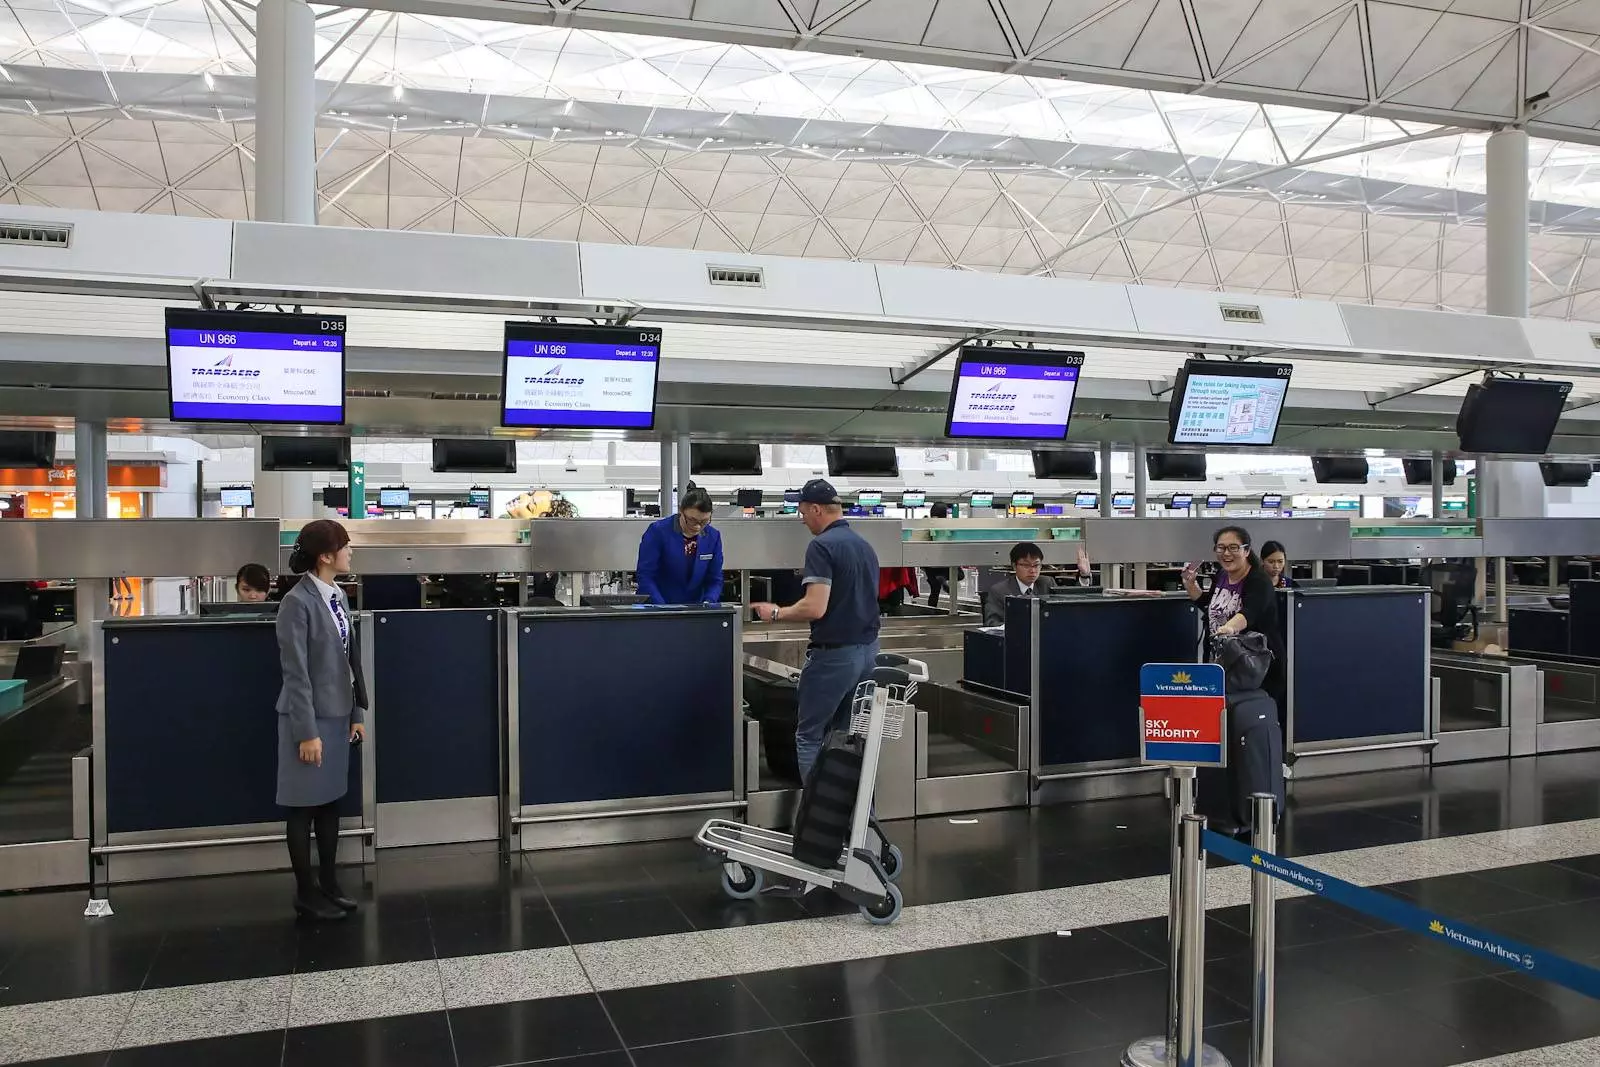 Klm: регистрация на рейс авиакомпании клм онлайн, в аэропорту и с помощью терминалов самообслуживания, нюансы и правила